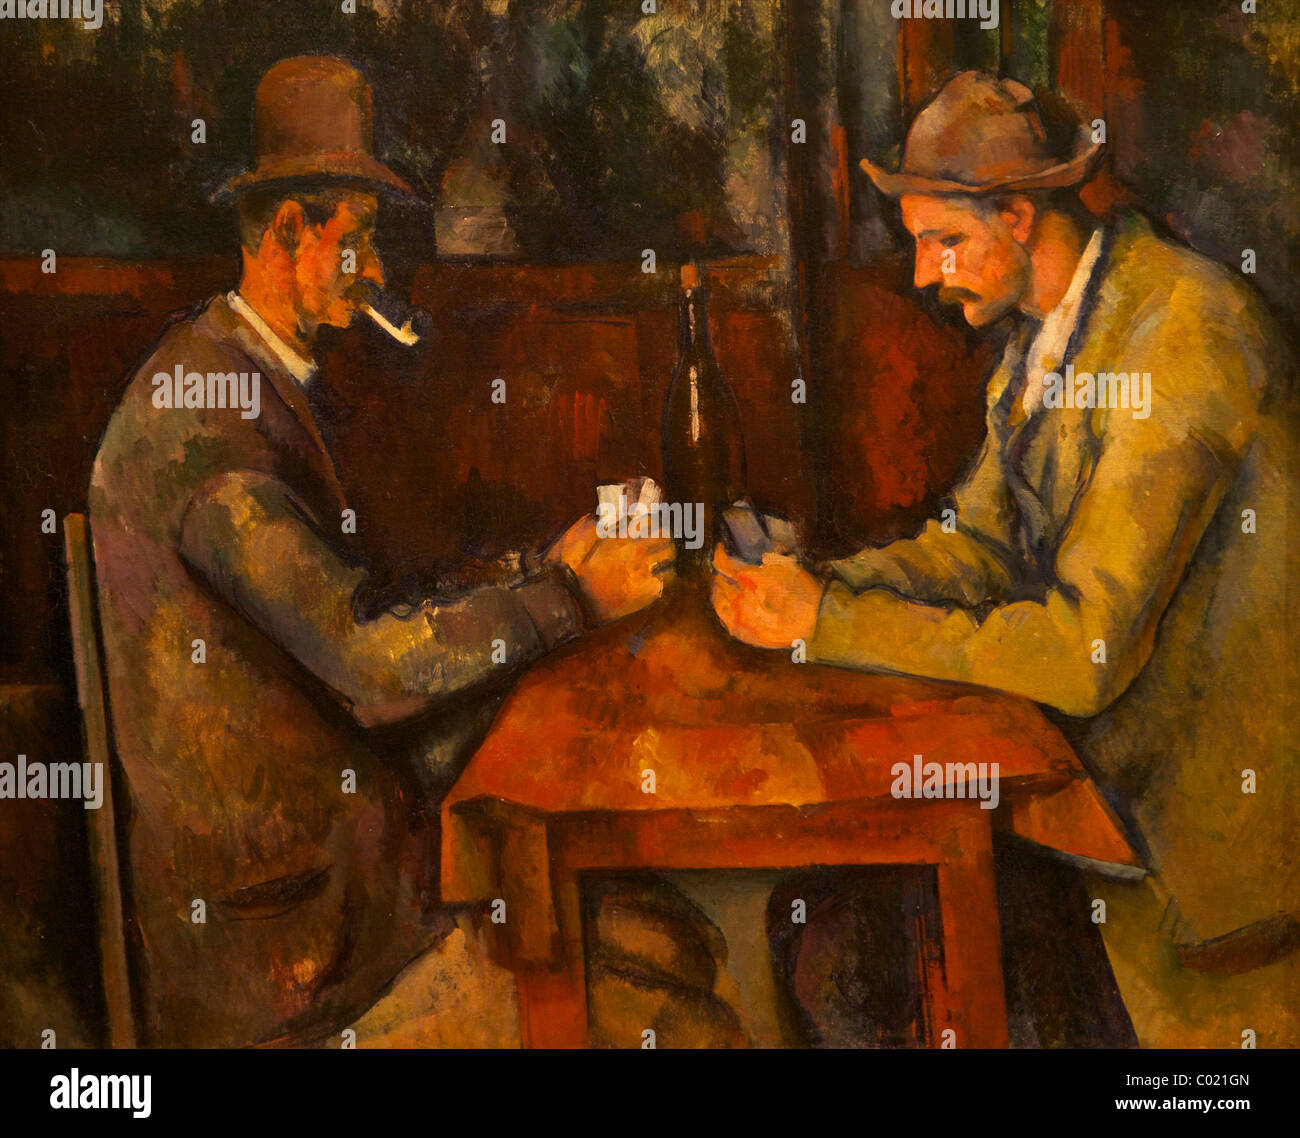 Joueurs de cartes, vers 1892-1896, Paul Cezanne, Courtauld Gallery, Somerset House, Londres, Angleterre, Royaume-Uni, France, FR Banque D'Images